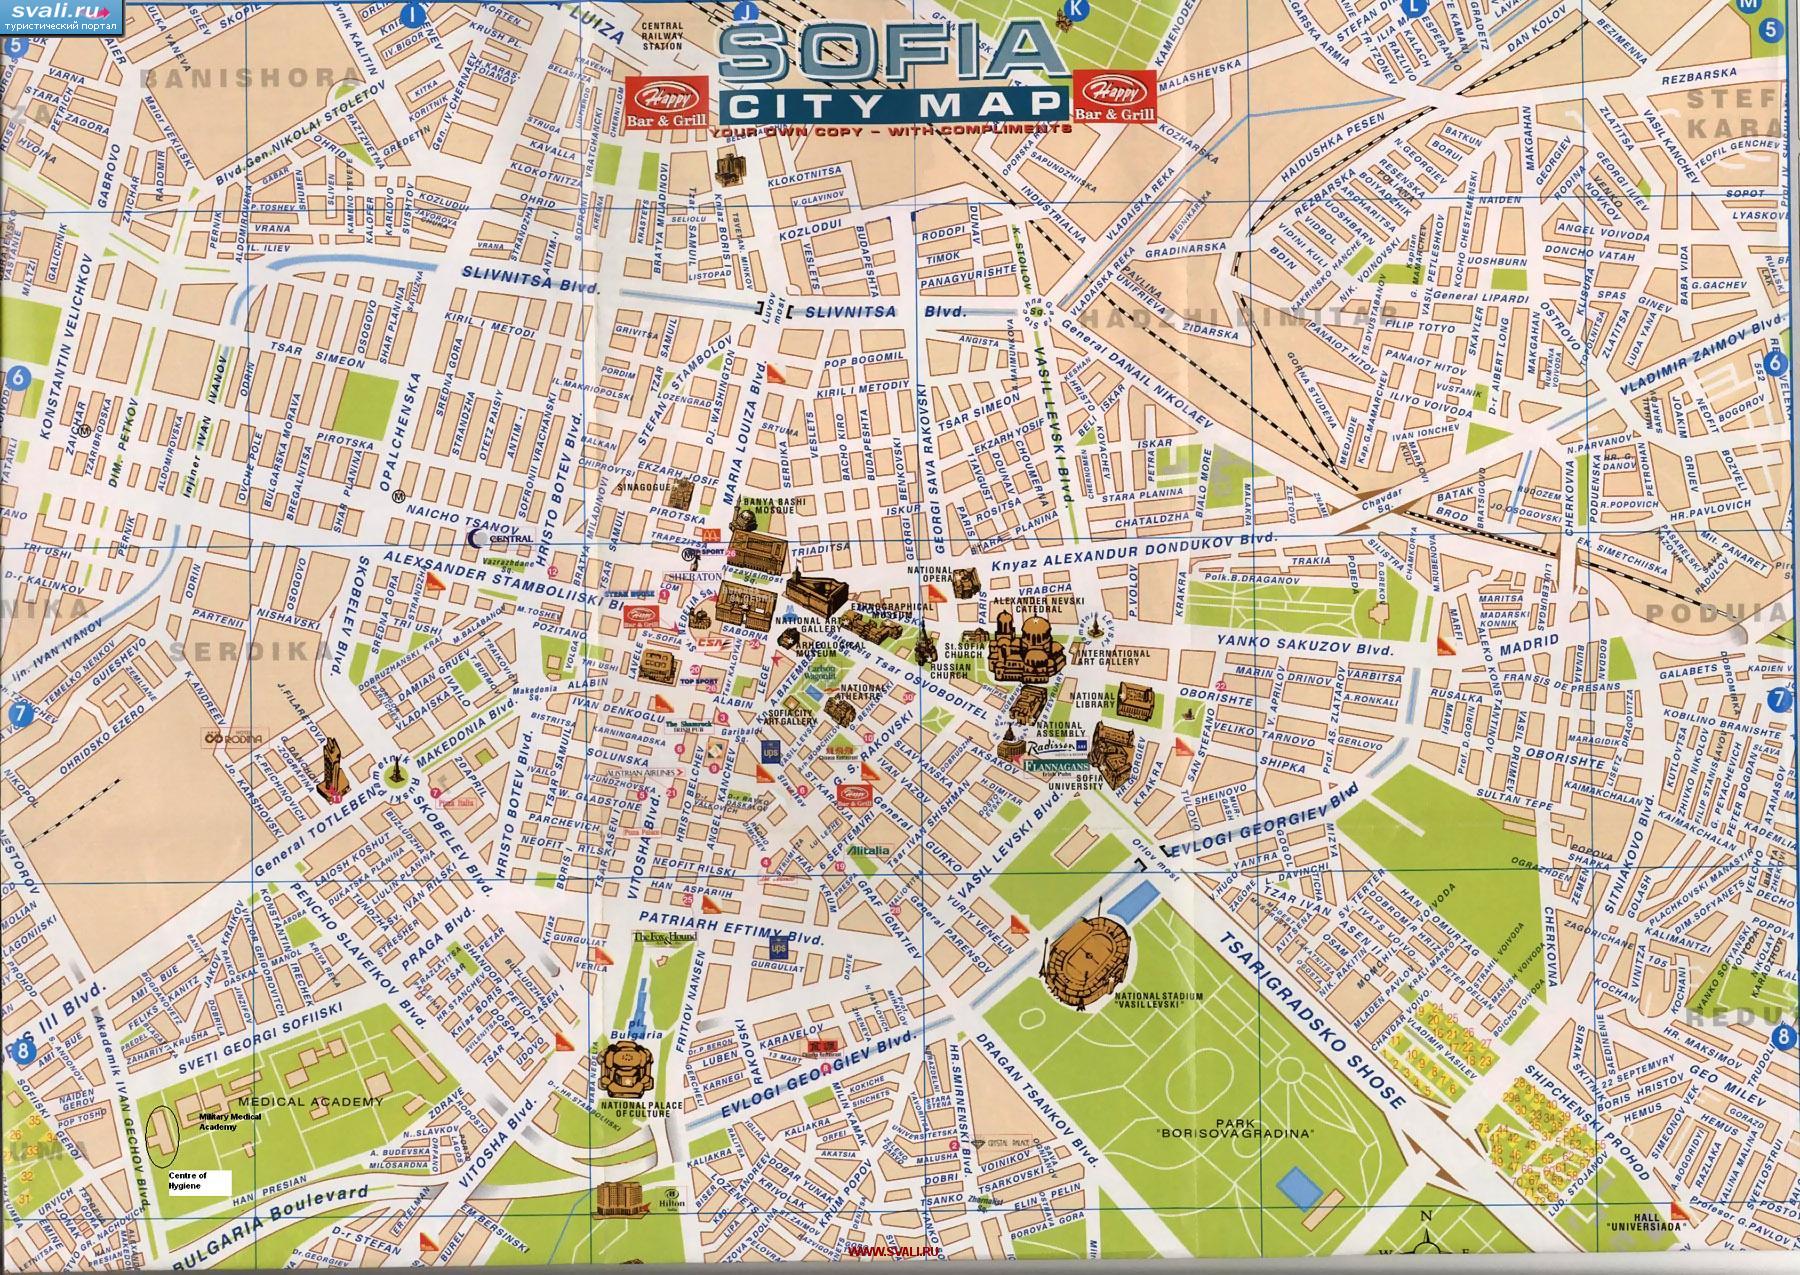 Подробная туристическая карта центра города София, Болгария. 